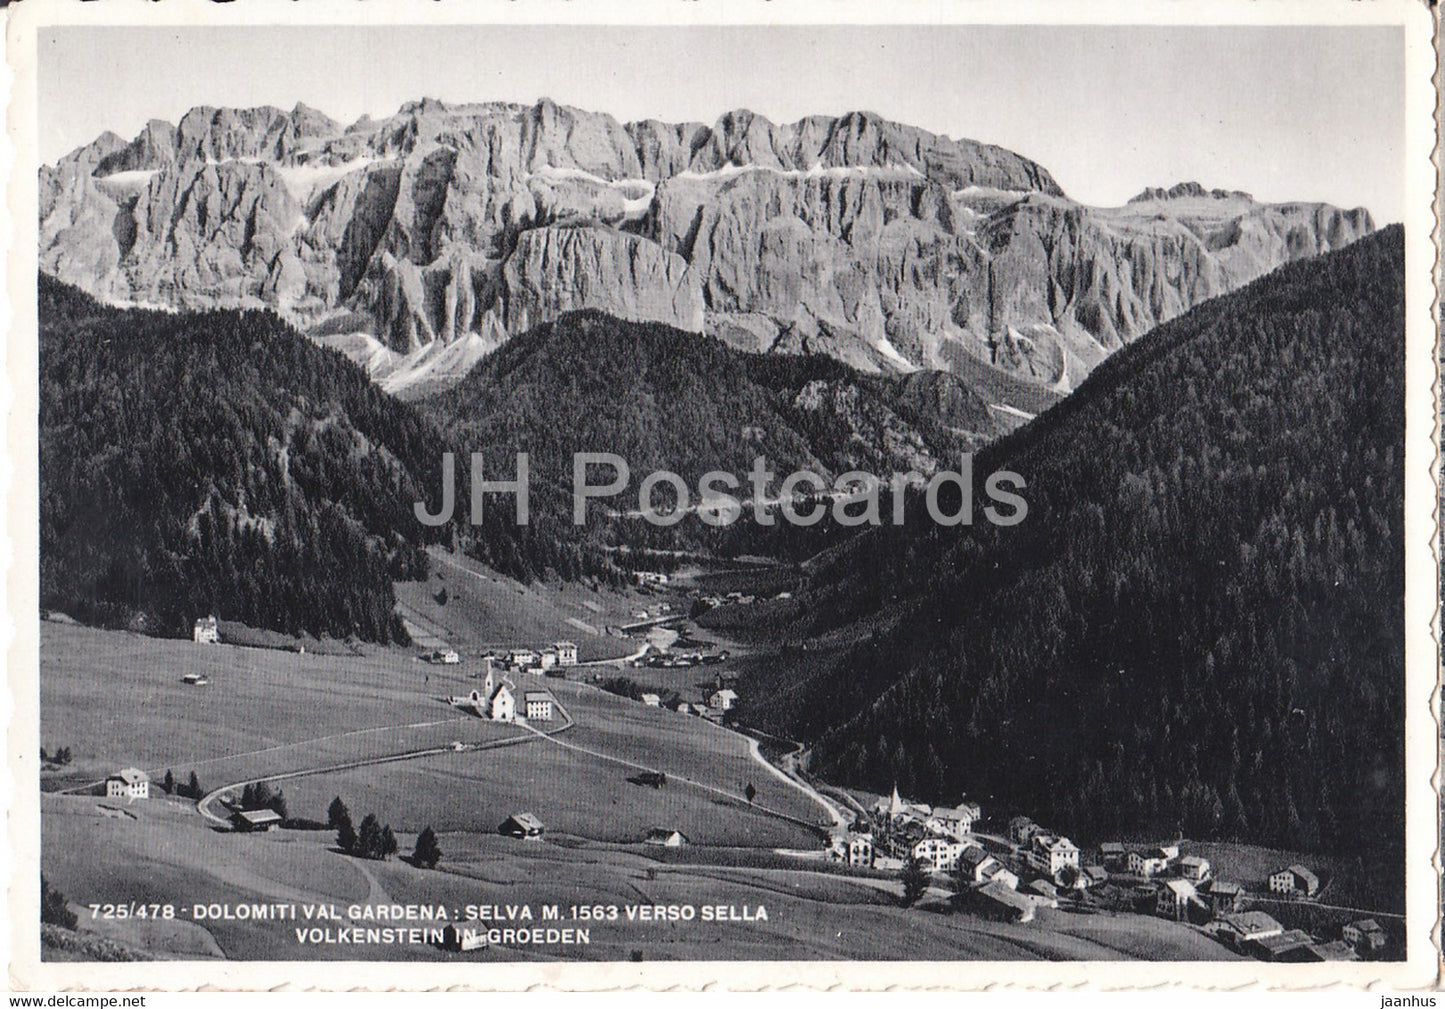 Dolomiti val Gardena - Selva 1563 m Verso Sella Volkenstein in Groeden - Italy - used - JH Postcards